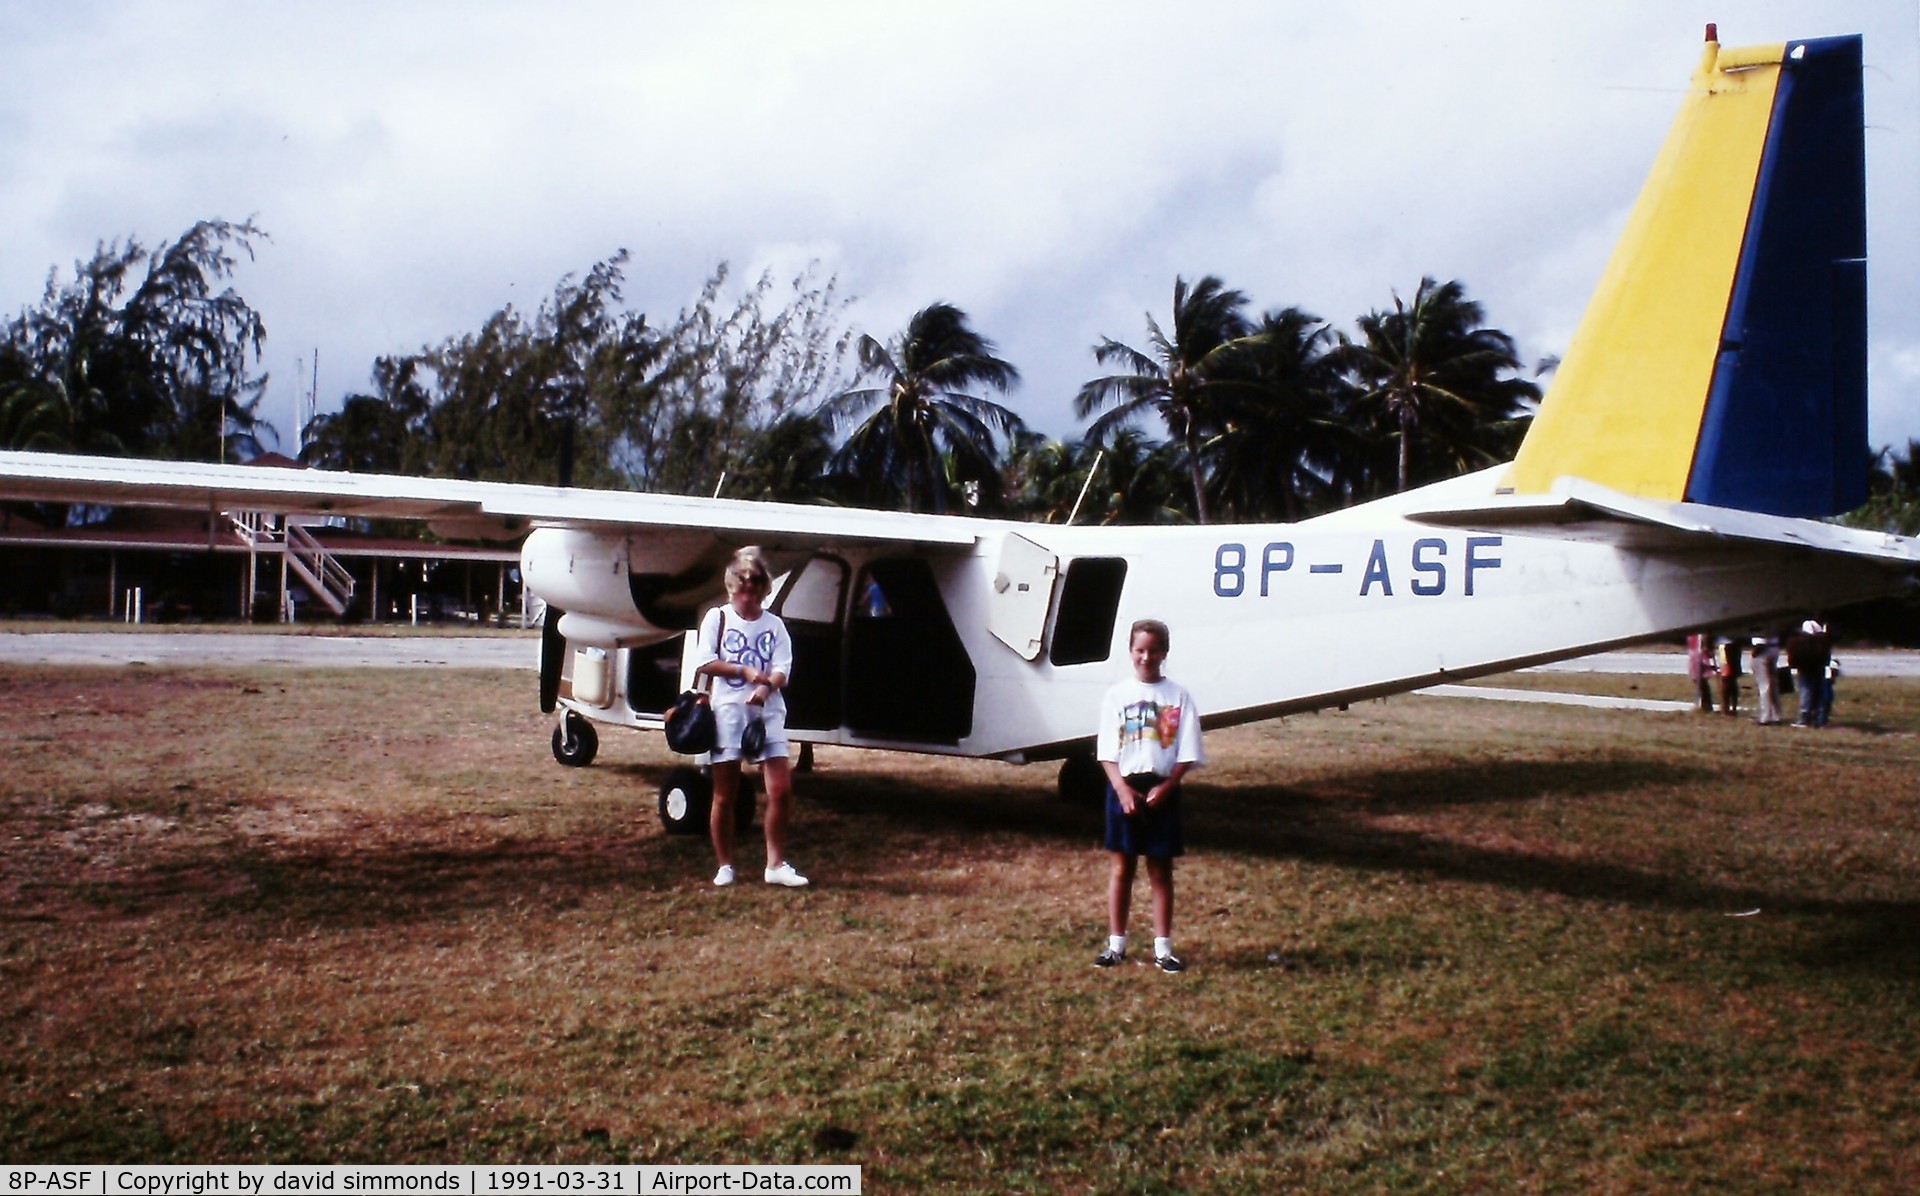 8P-ASF, 1976 Britten-Norman BN-2A Mk.III-2 Trislander C/N 1035, Taken in March 1991 on Union Island